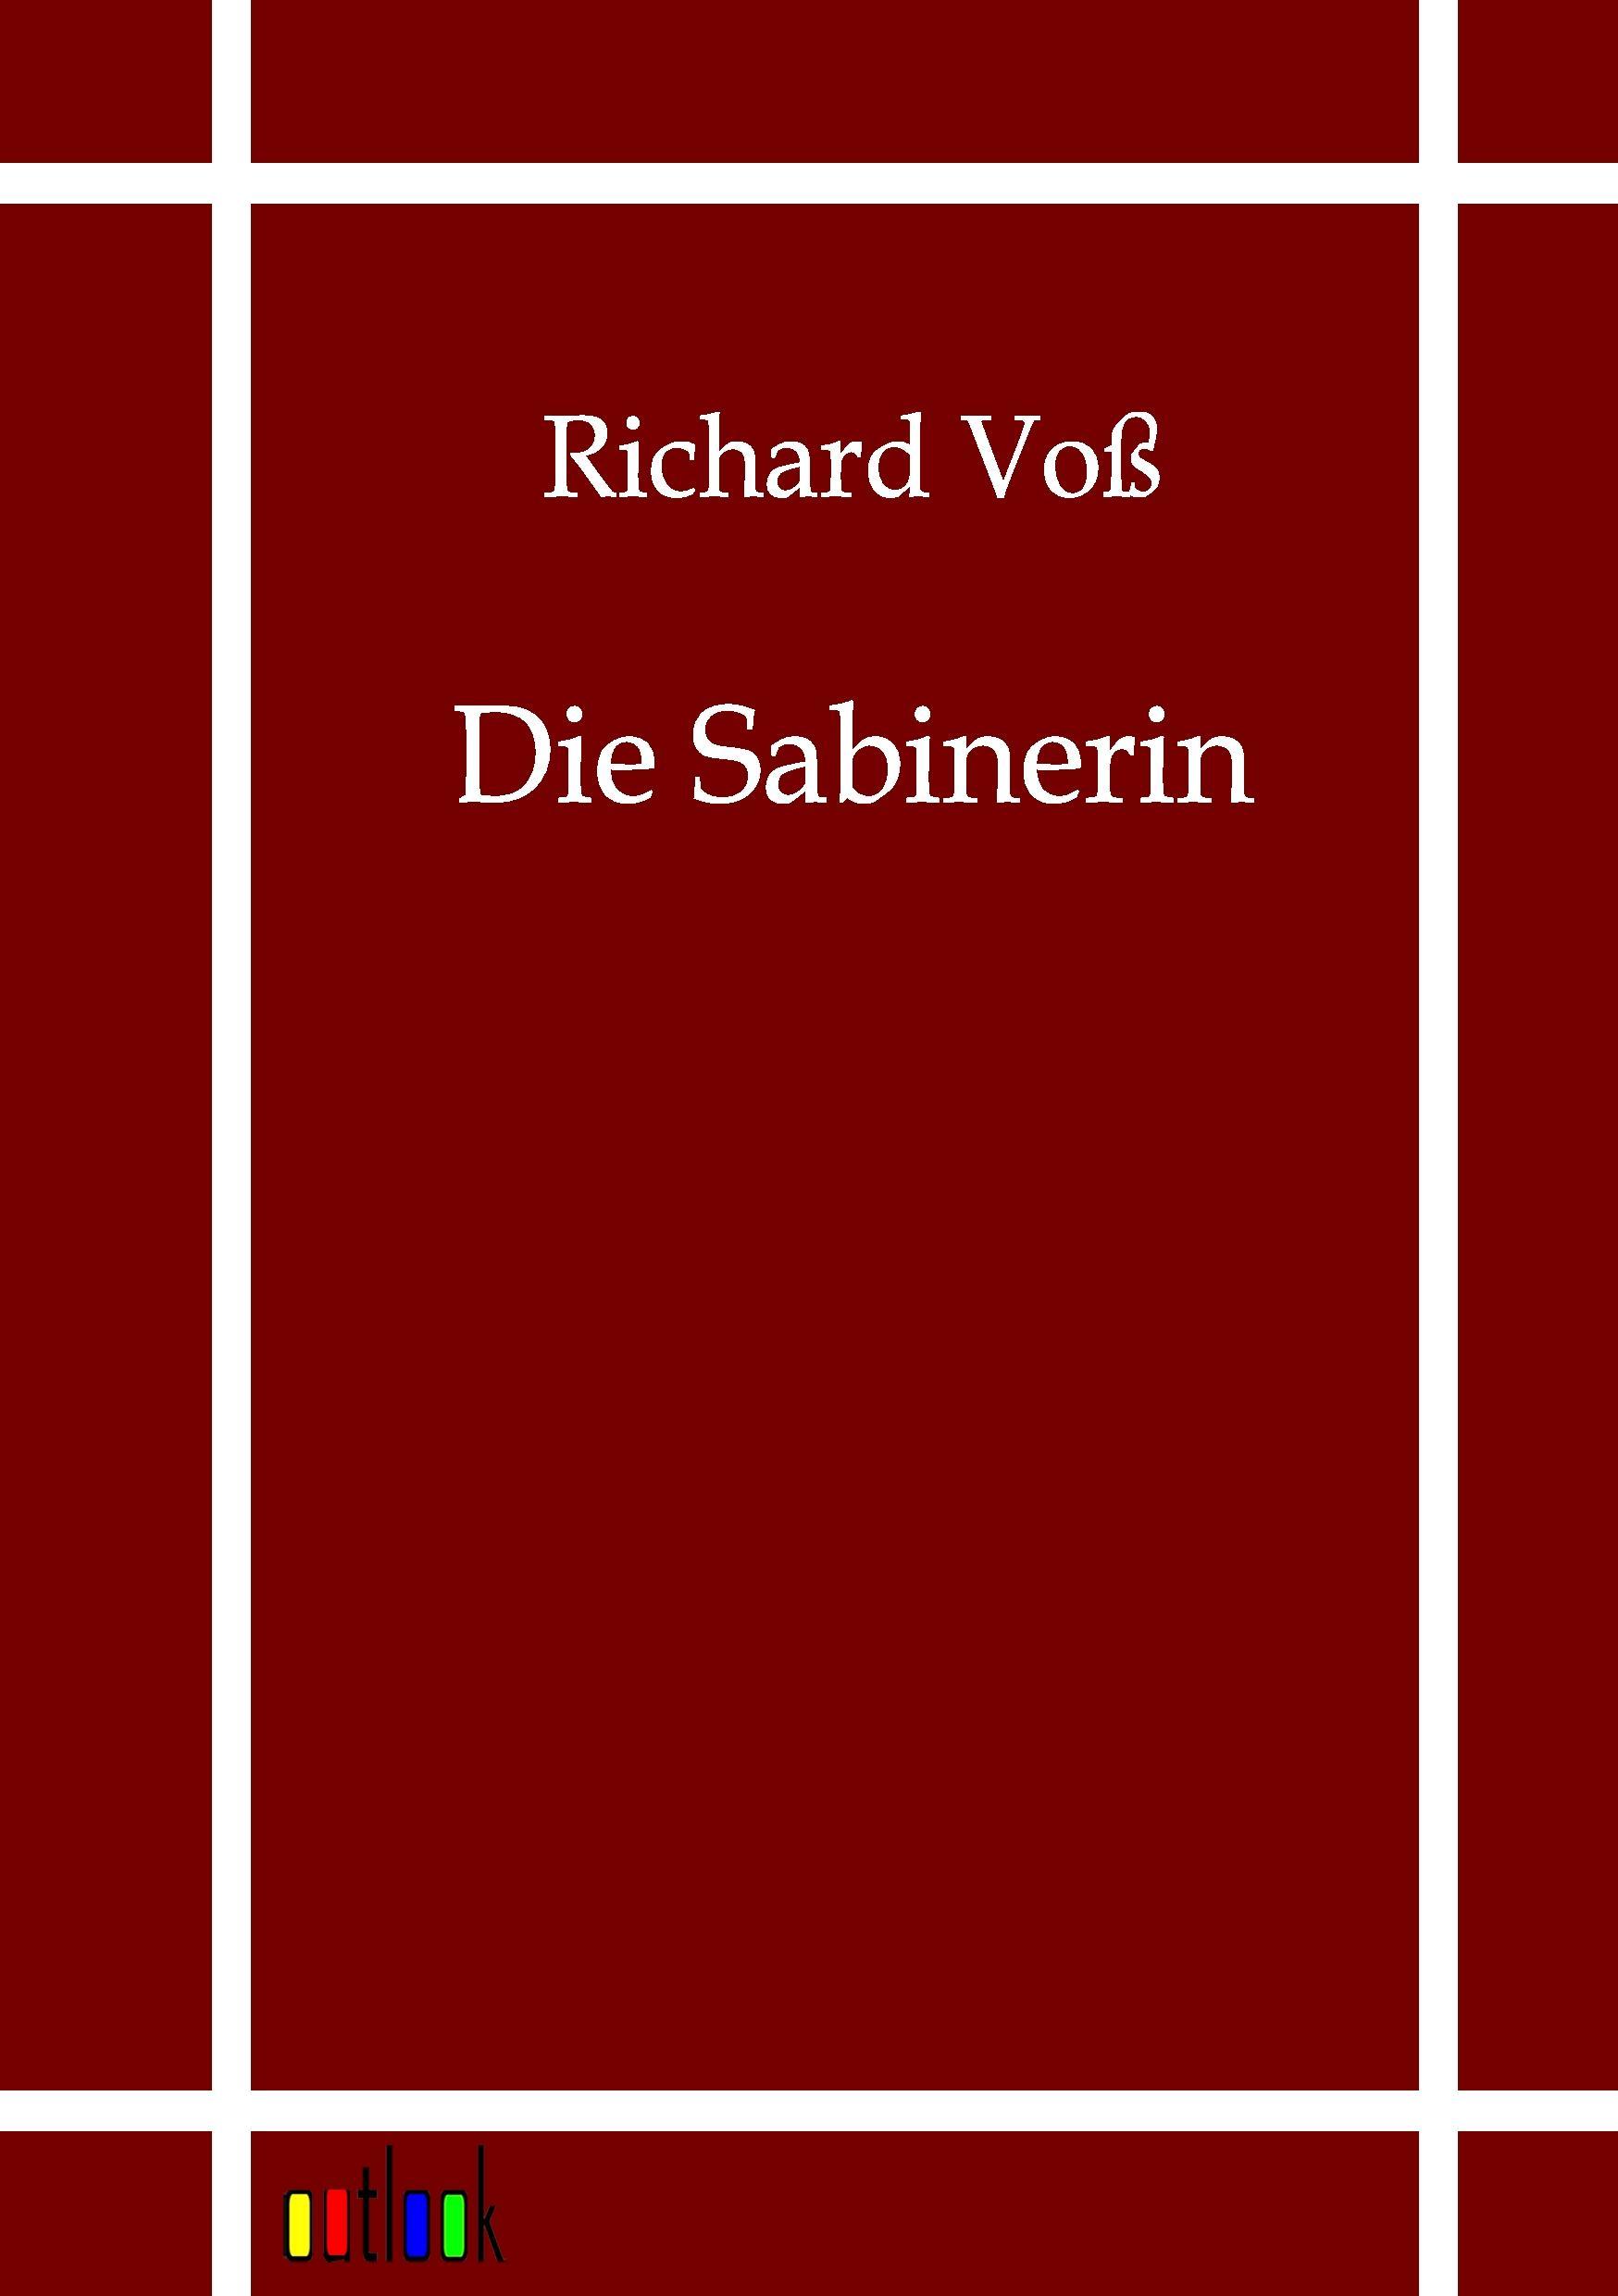 Die Sabinerin - Voss, Richard